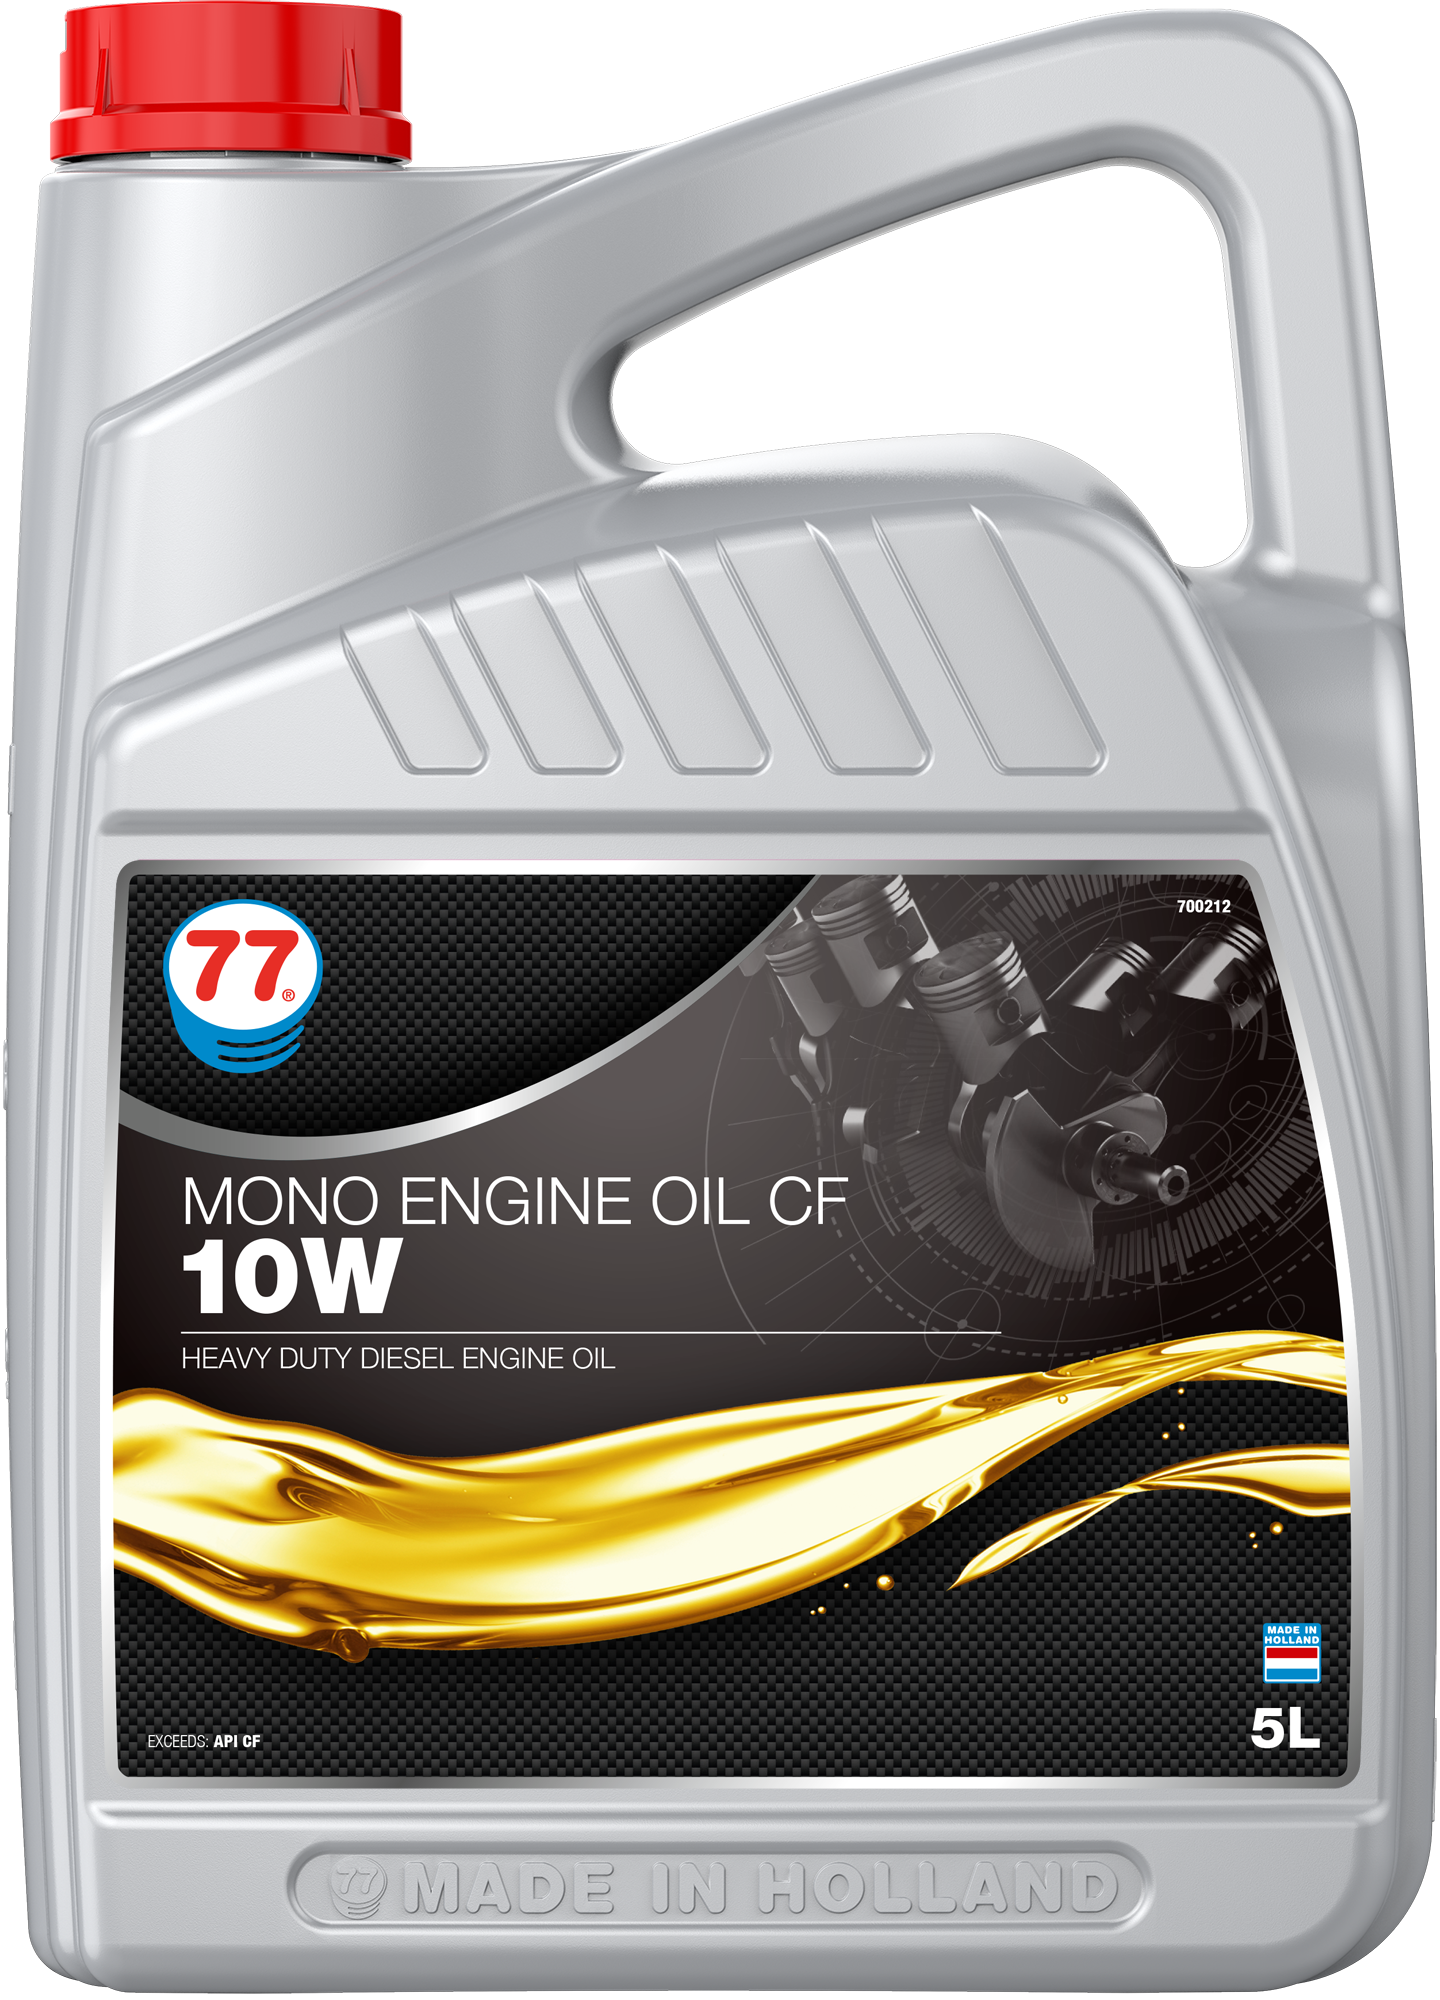 4262-5 Mono Engine Oil CF 10W is een zware dieselmotor olie ontwikkeld om te voldoen aan de eisen van een verscheidenheid van dieselmotoren die onder zware omstandigheden.